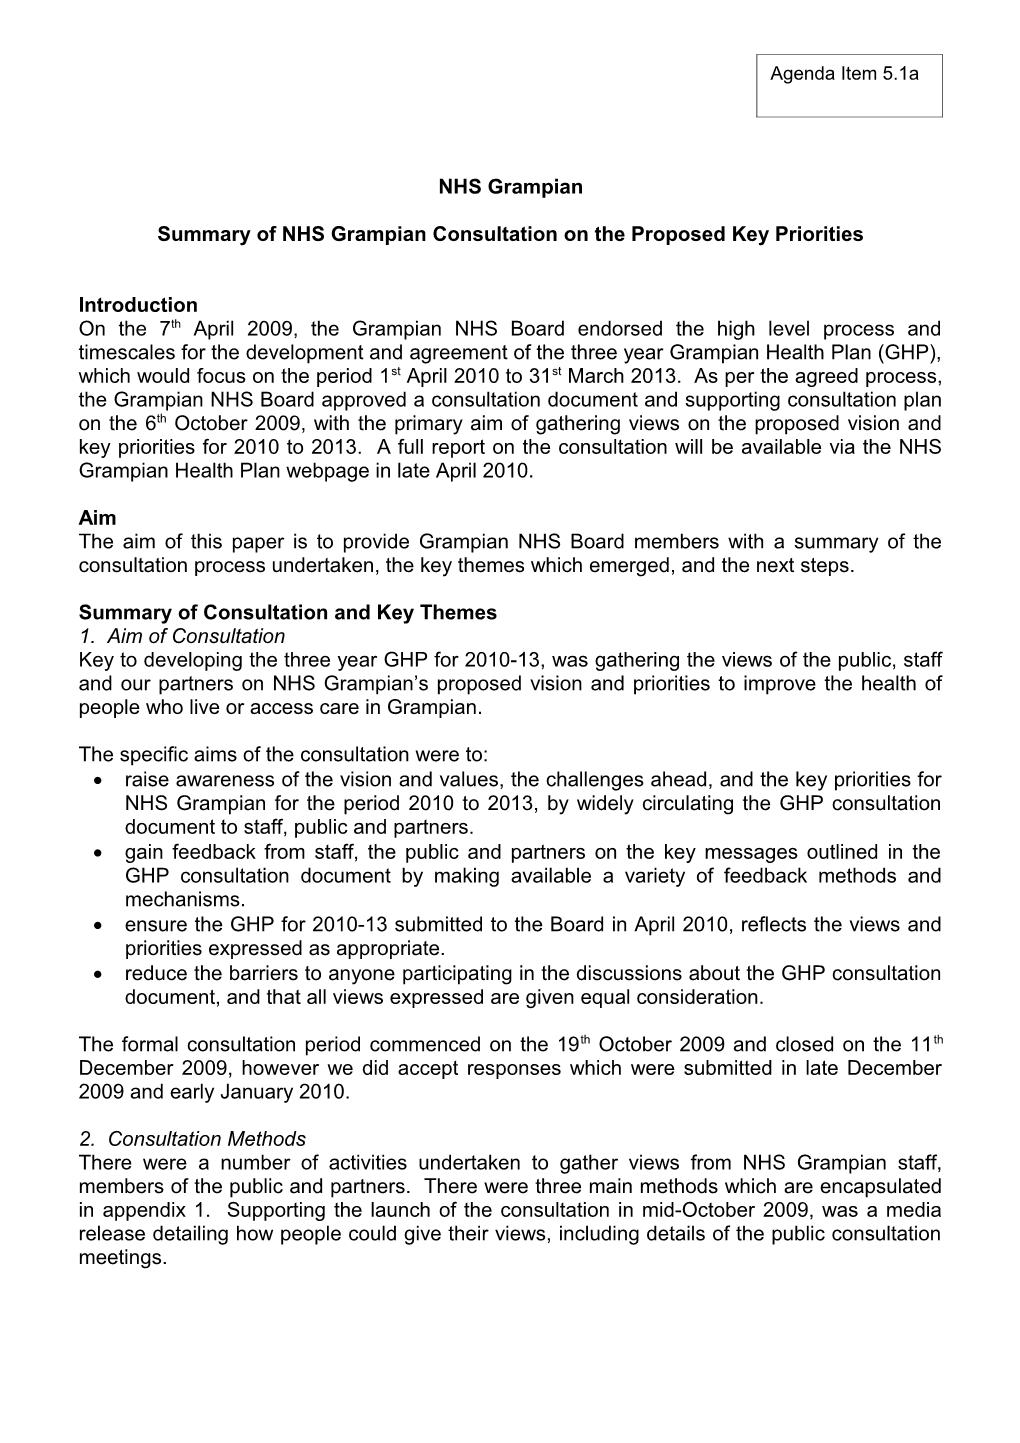 Item 5.1 for 6 Apr 10 GHP Consultation Summary Report